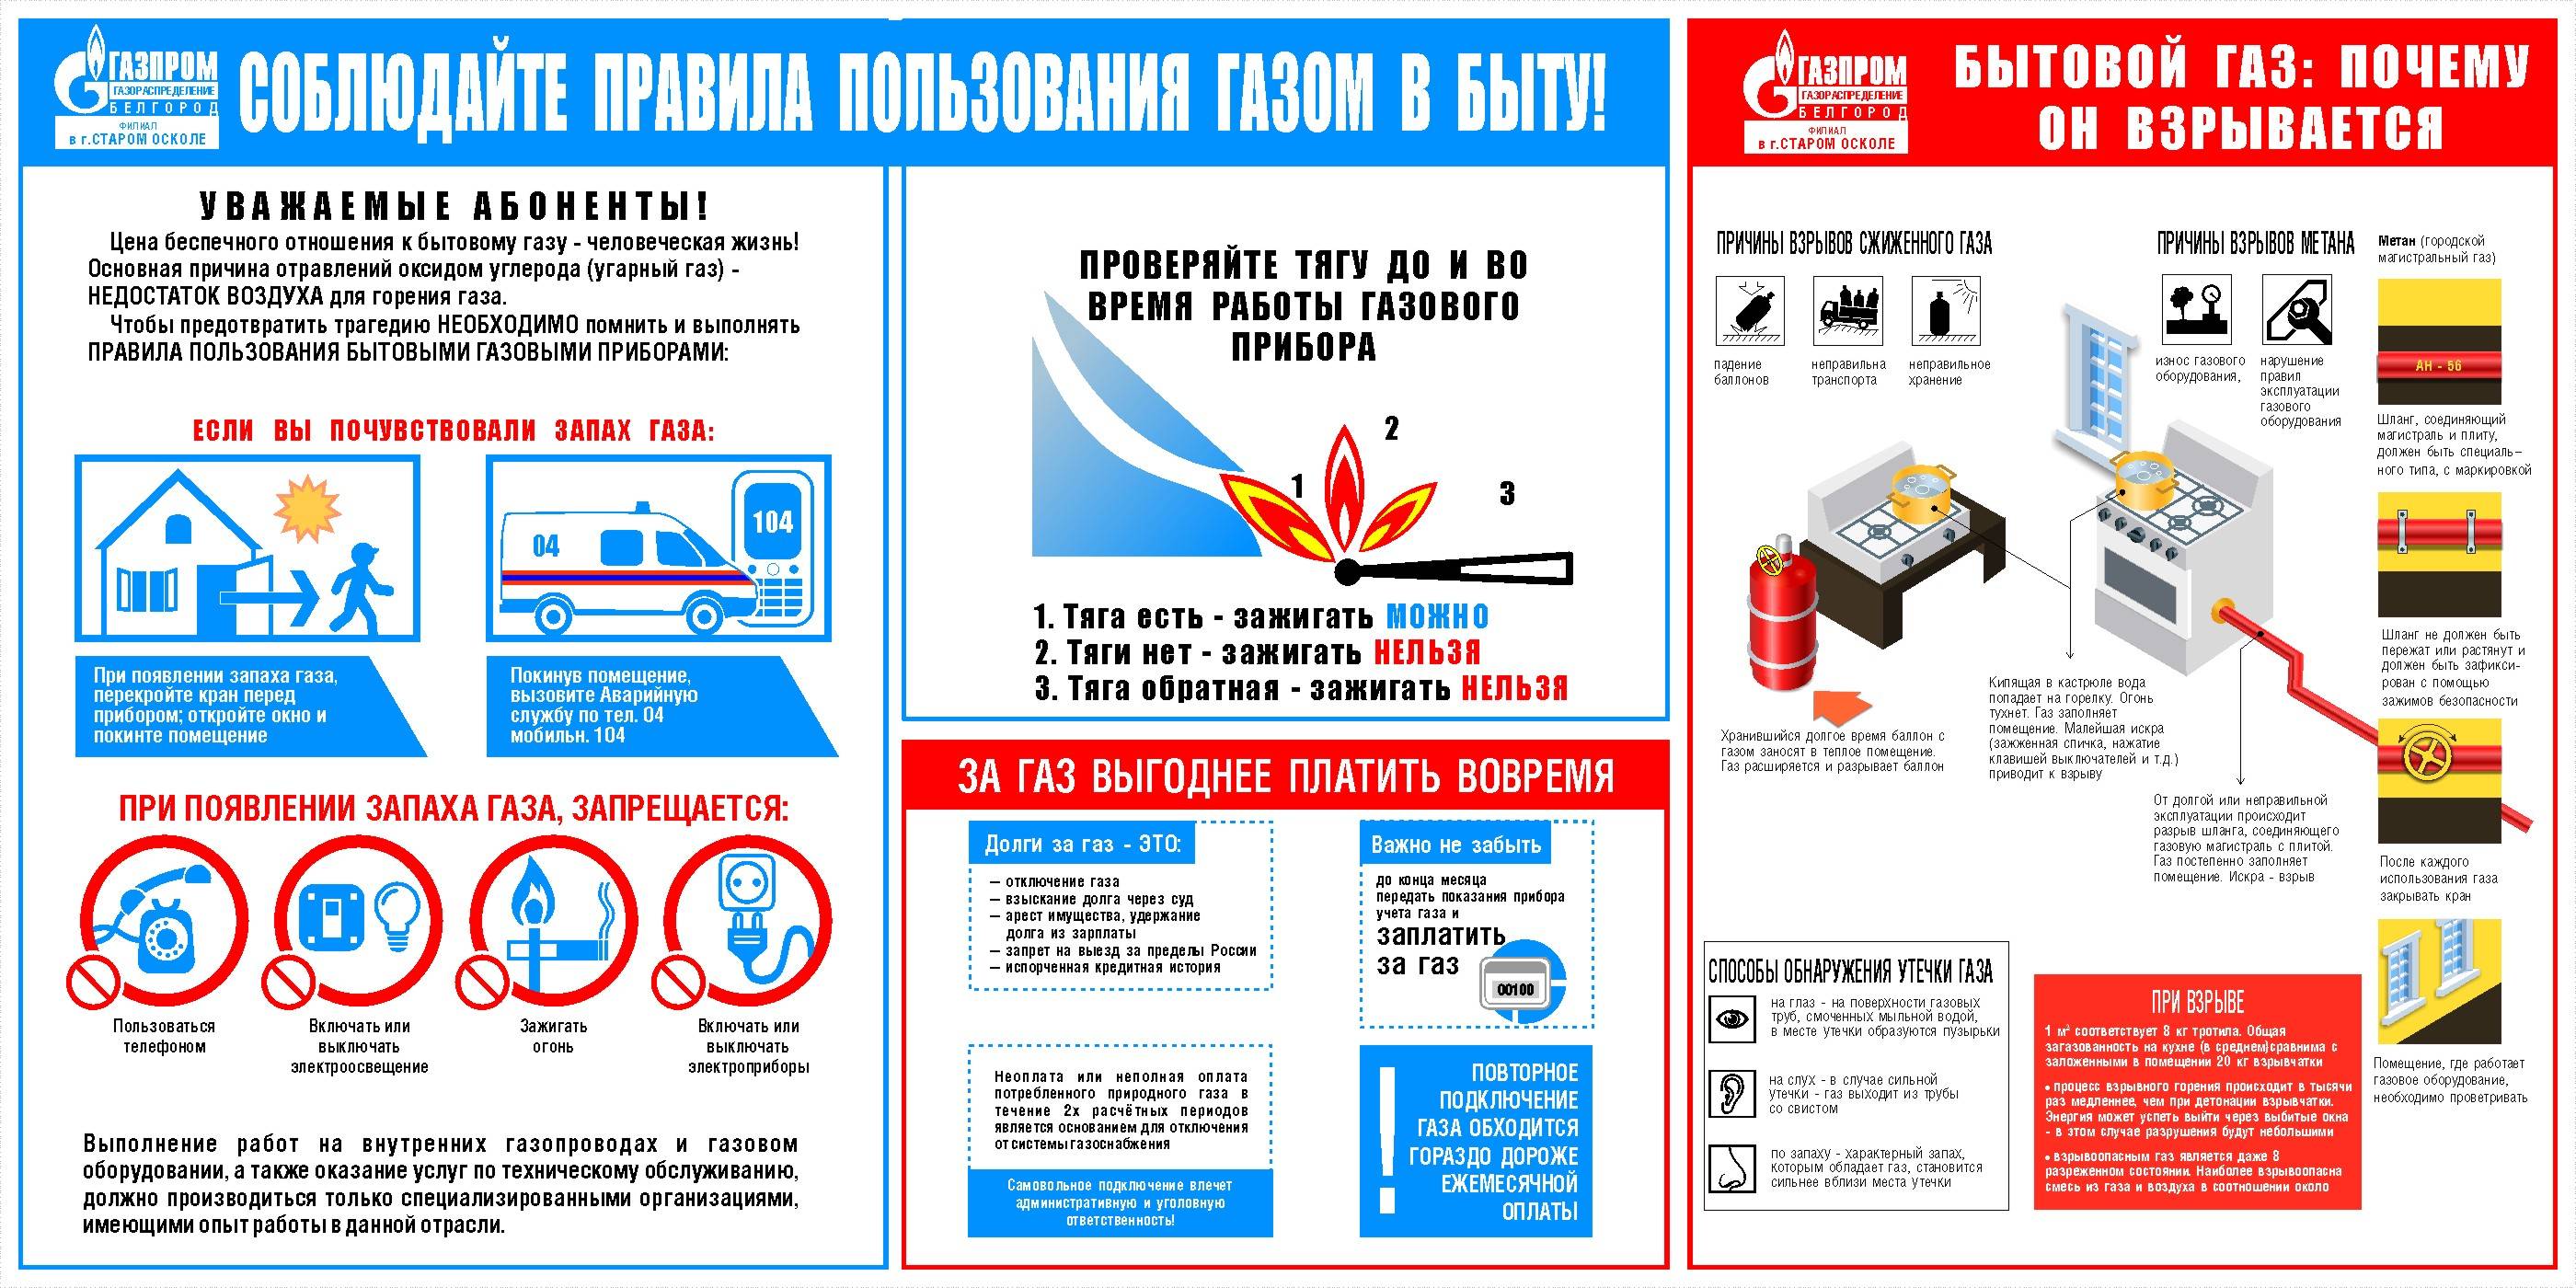 Меры пожарной безопасности при обращении с газовыми,  электрическими  приборами и печным отоплением  и меры ответственности за нарушение правил пожарной безопасности